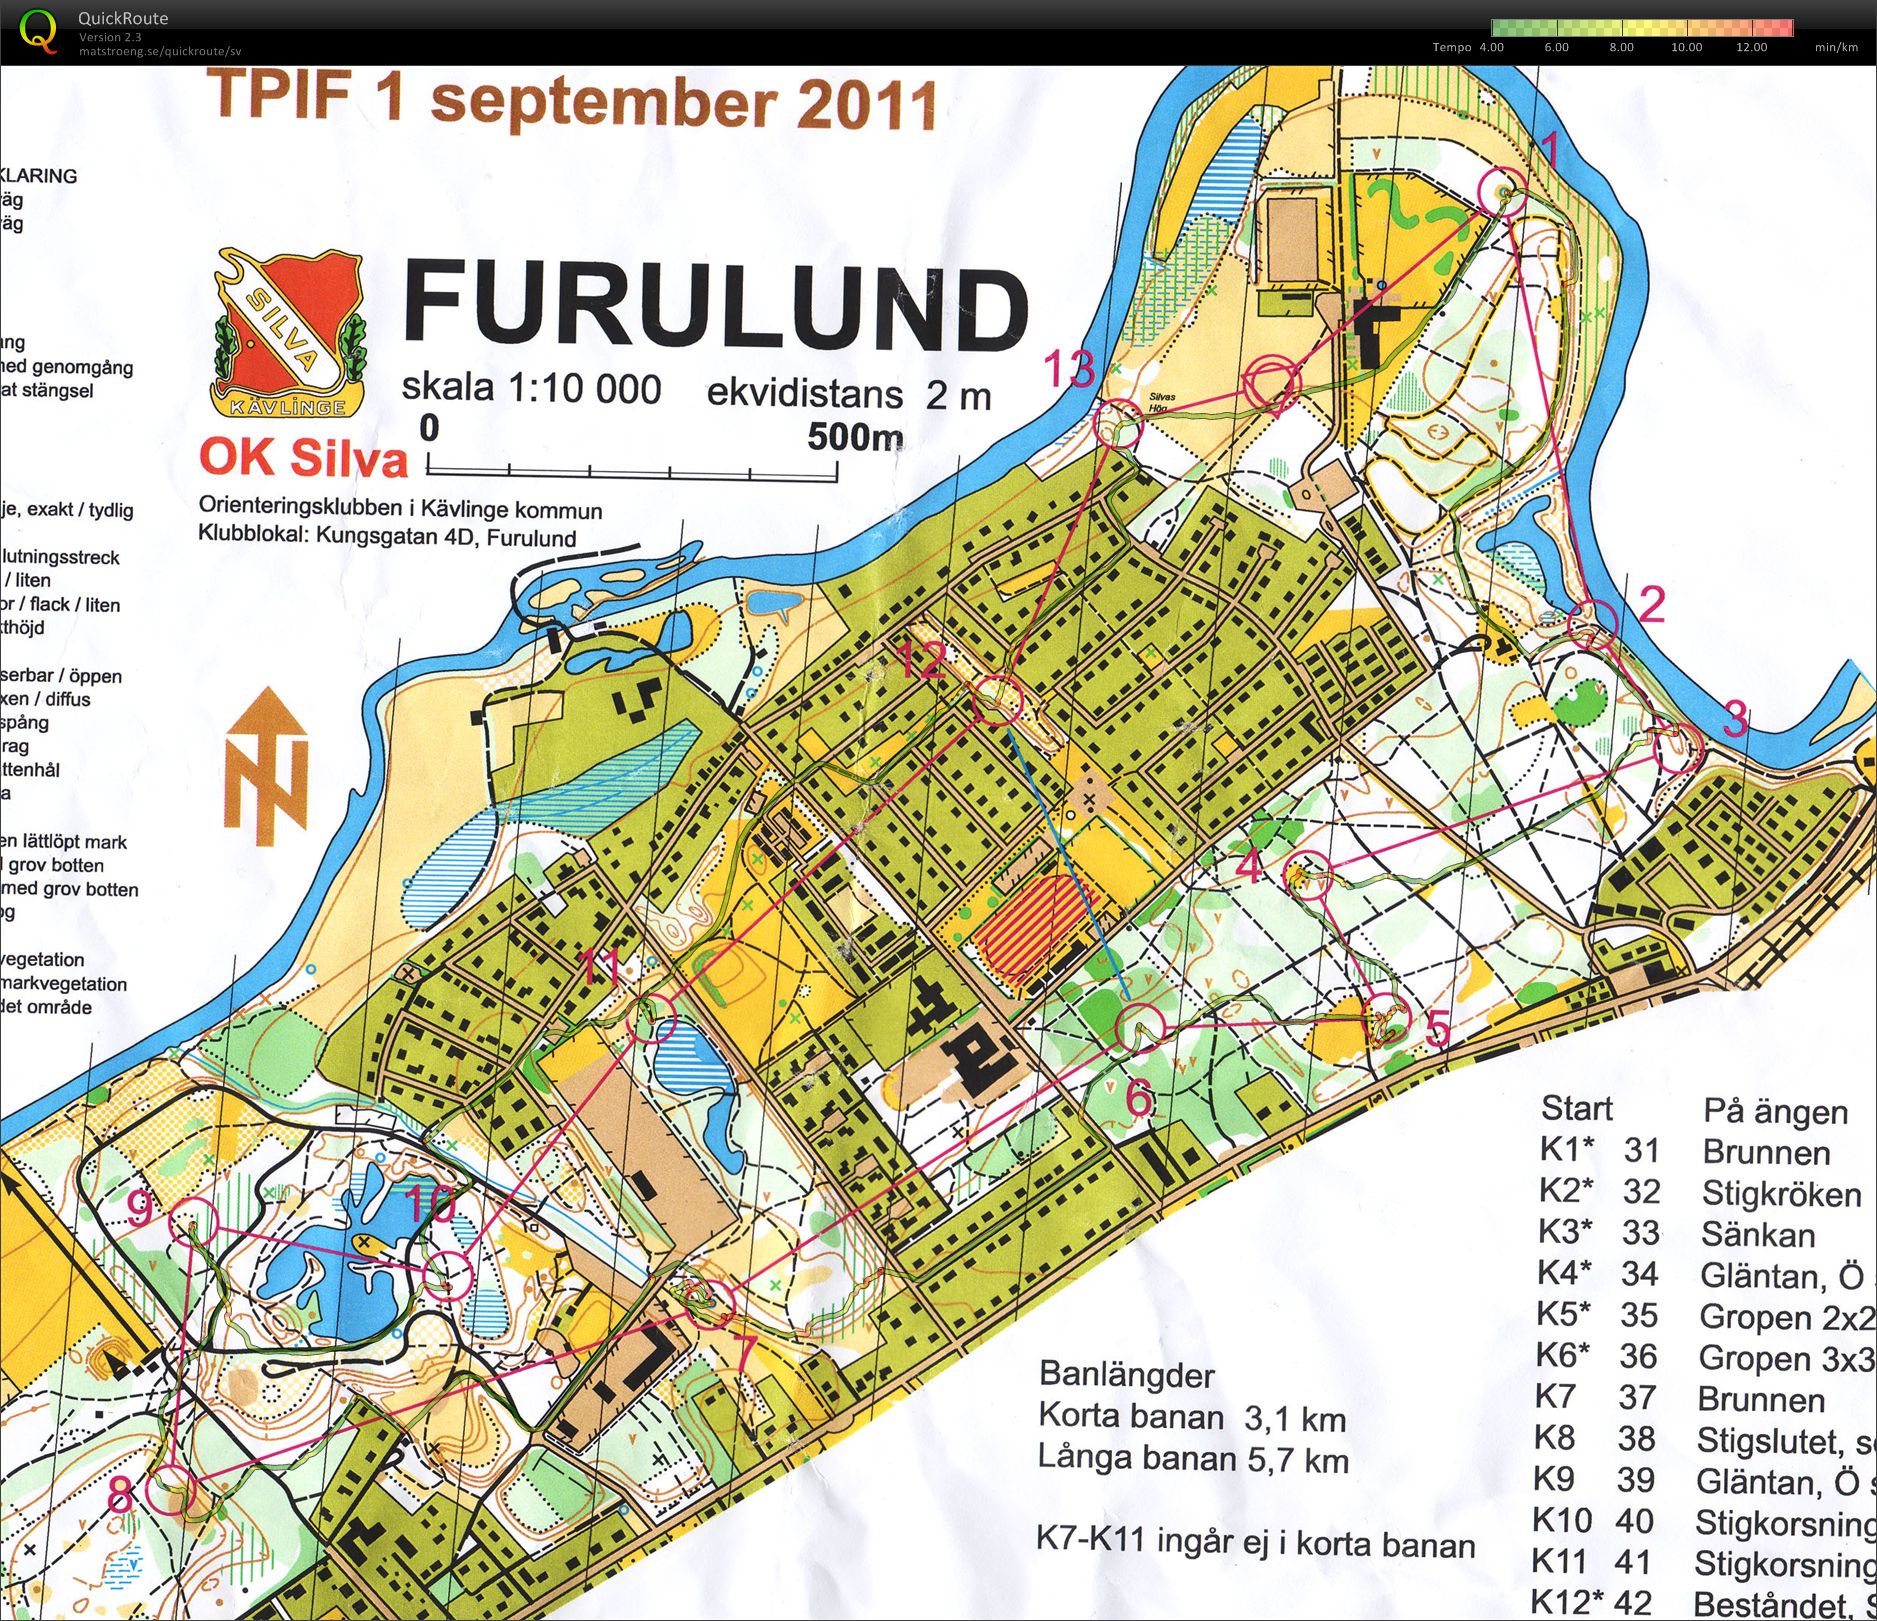 TetraPak OL Furulund (31-08-2011)